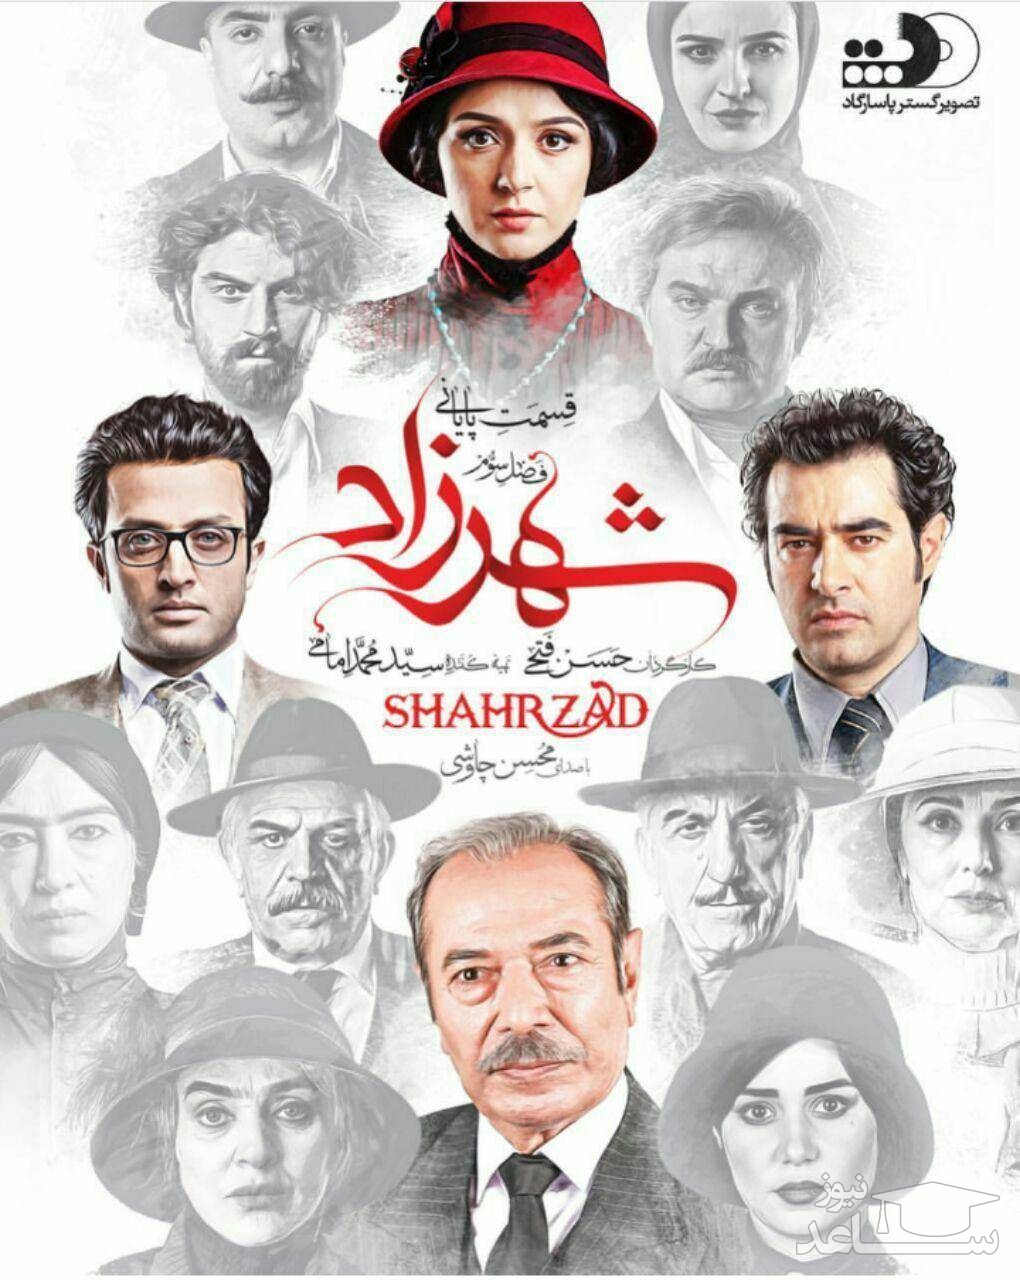 shahrzad series instagram